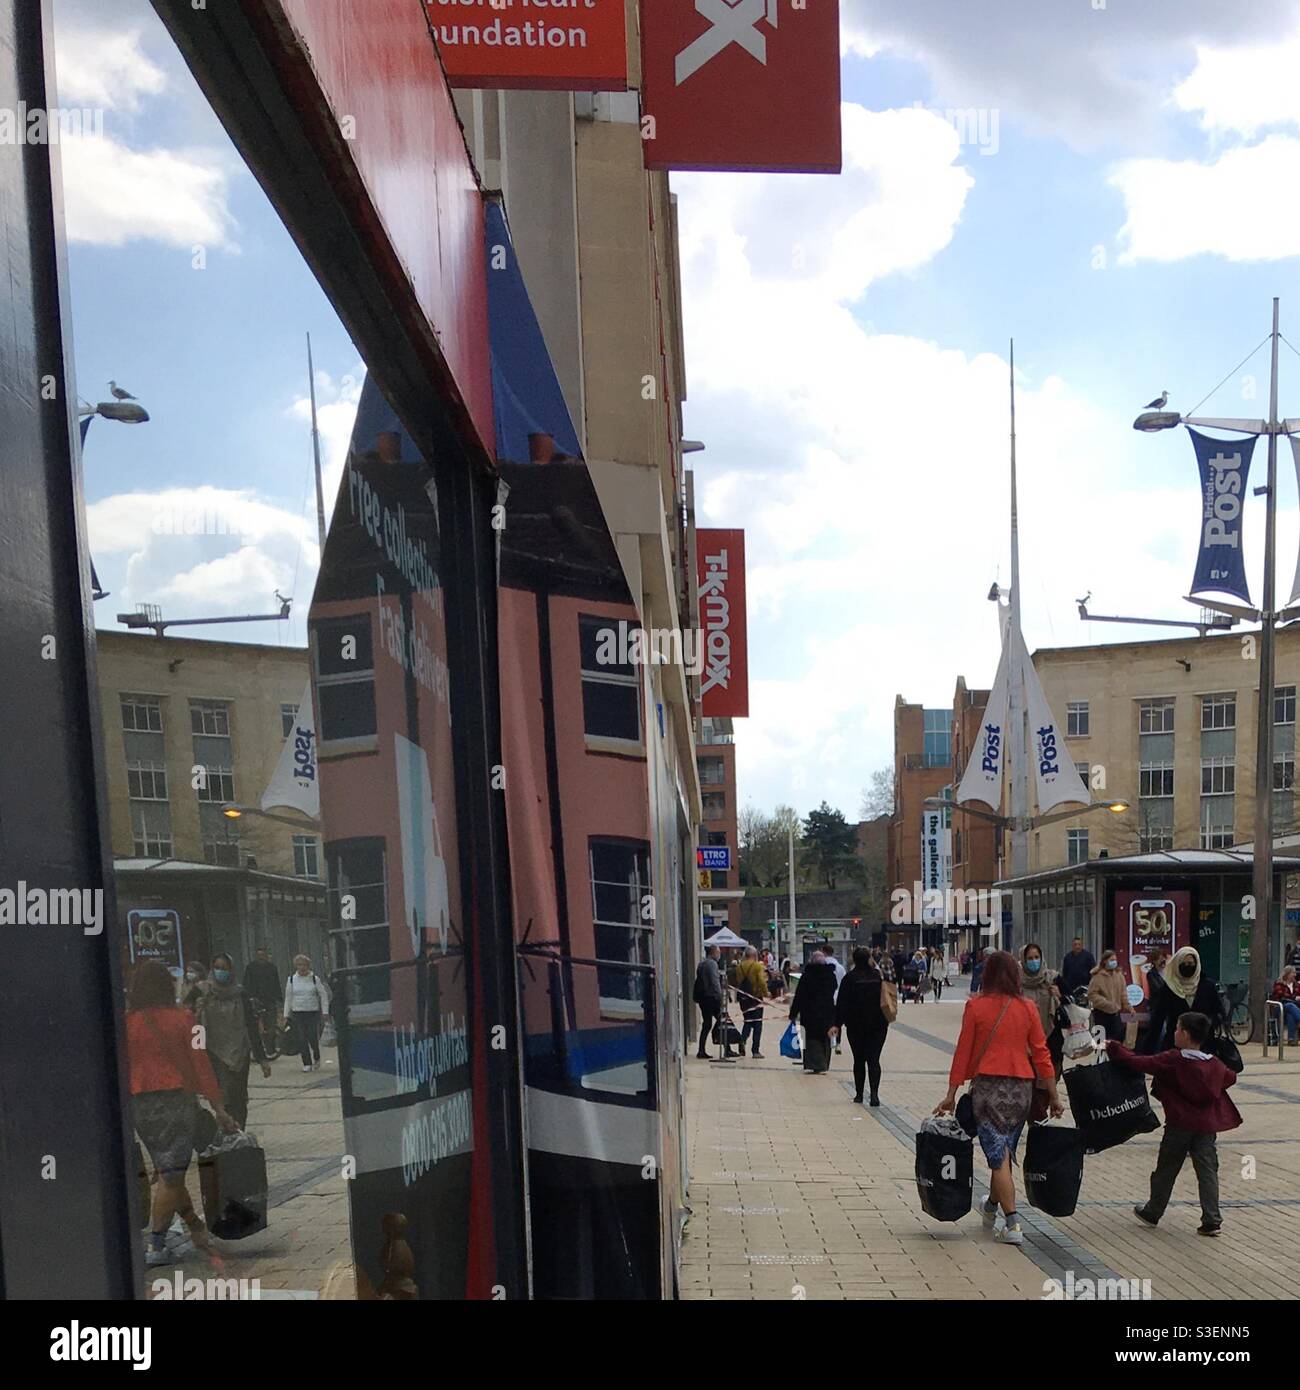 15. April 2021 - Bristol, Großbritannien: Käufer kehren zurück nach der Wiedereröffnung des nicht unbedingt notwendigen Einzelhandels am 12. April, der jüngsten Lockerung der Lockdown-Maßnahmen Englands aufgrund der COVID-19-Pandemie Stockfoto